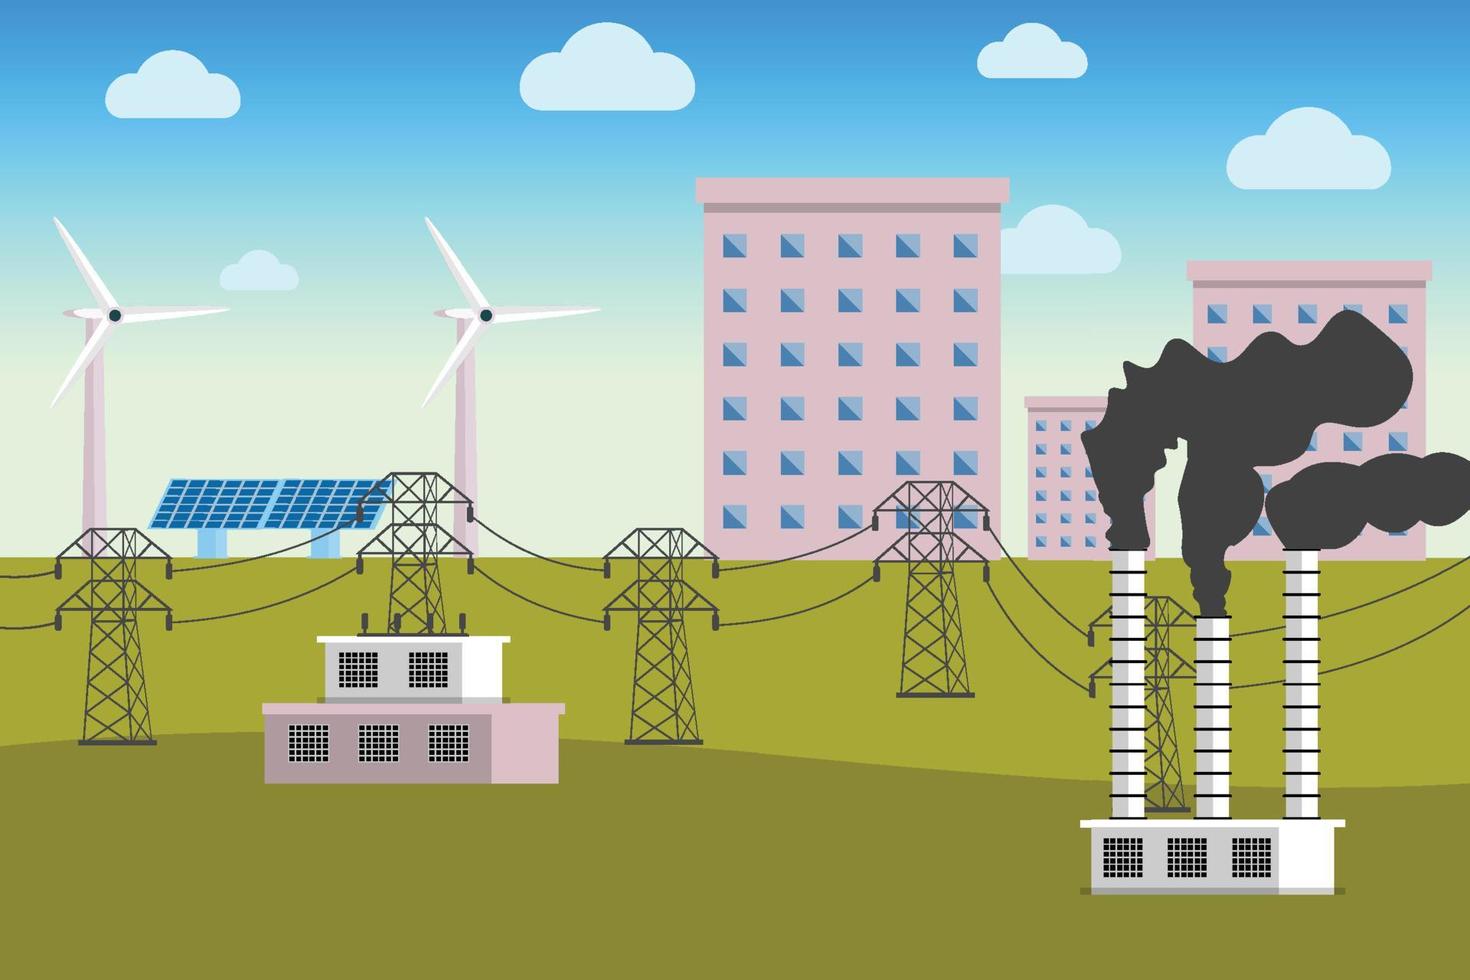 alimentation électrique avec concept de vecteur de pilier électrique long. production d'électricité avec des panneaux solaires, des éoliennes et des raffineries. méthode de transfert d'électricité avec des bâtiments urbains et un ciel bleu.